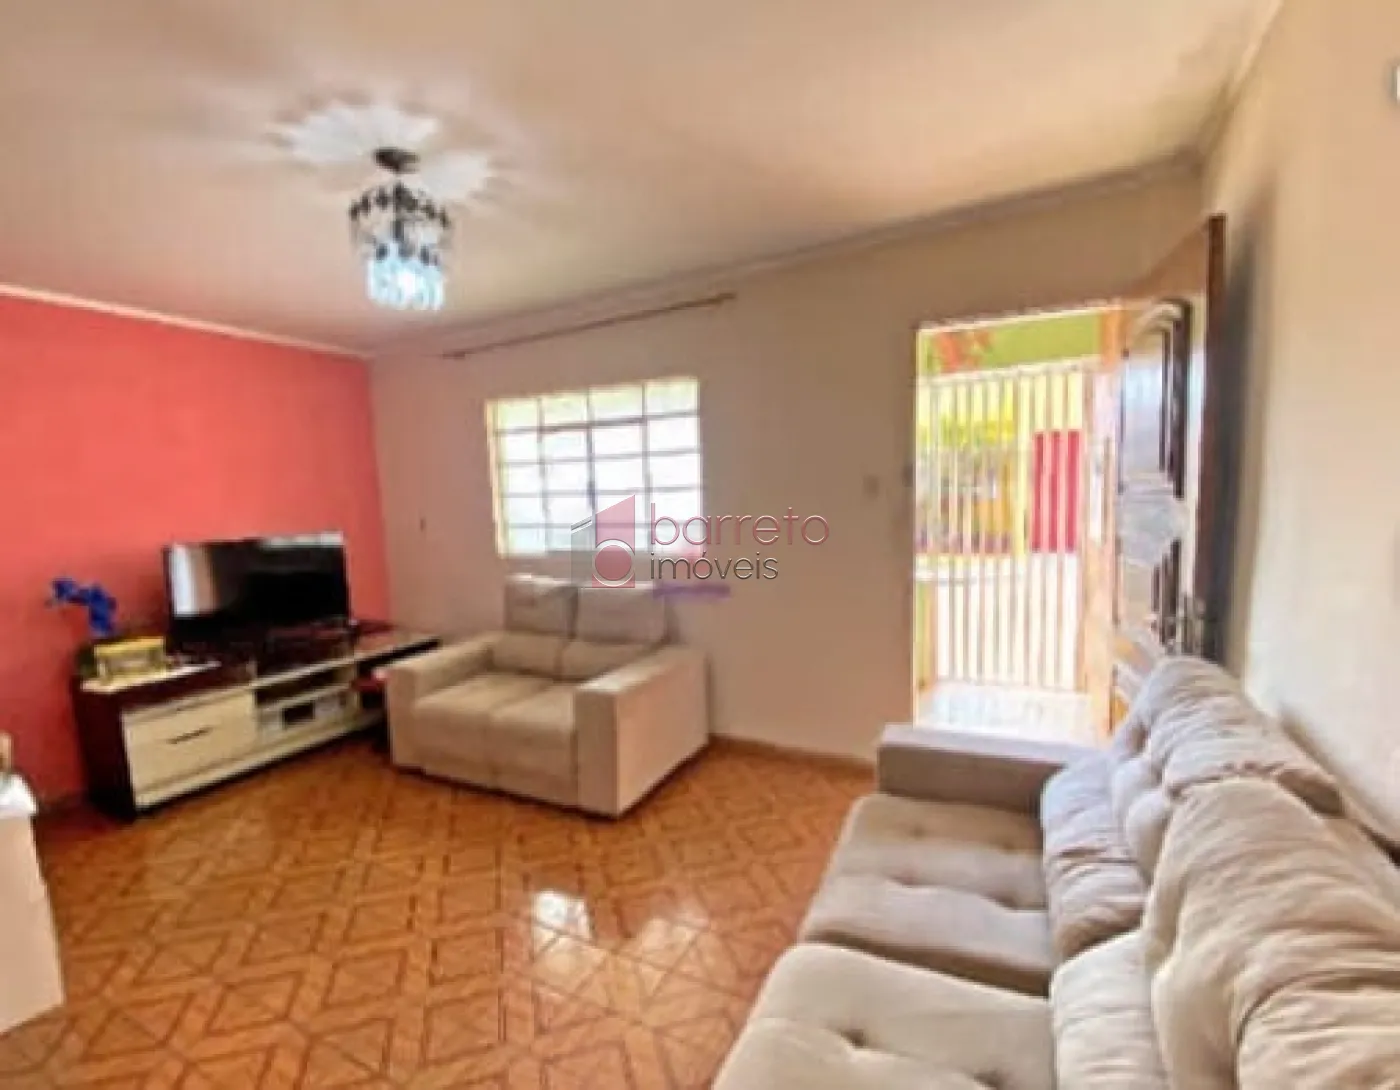 Alugar Casa / Padrão em Jundiaí R$ 1.600,00 - Foto 2